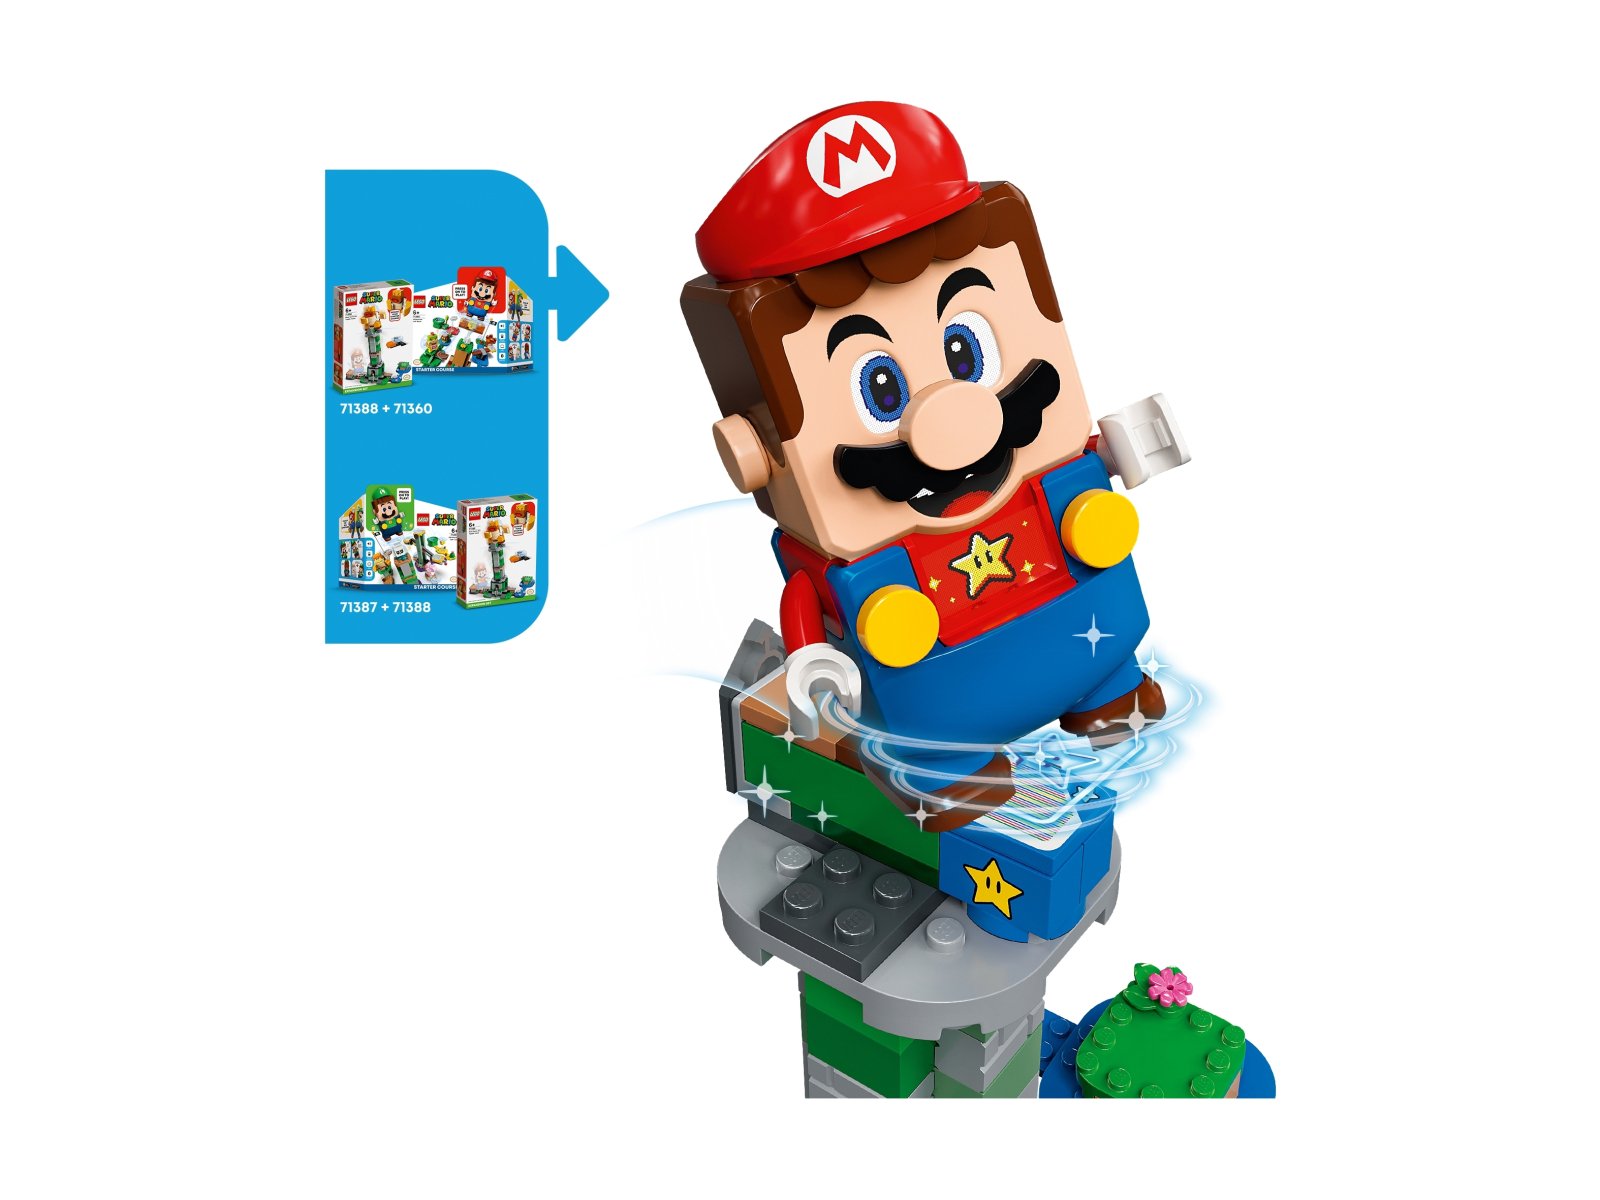 LEGO 71388 Super Mario Boss Sumo Bro i przewracana wieża — zestaw dodatkowy